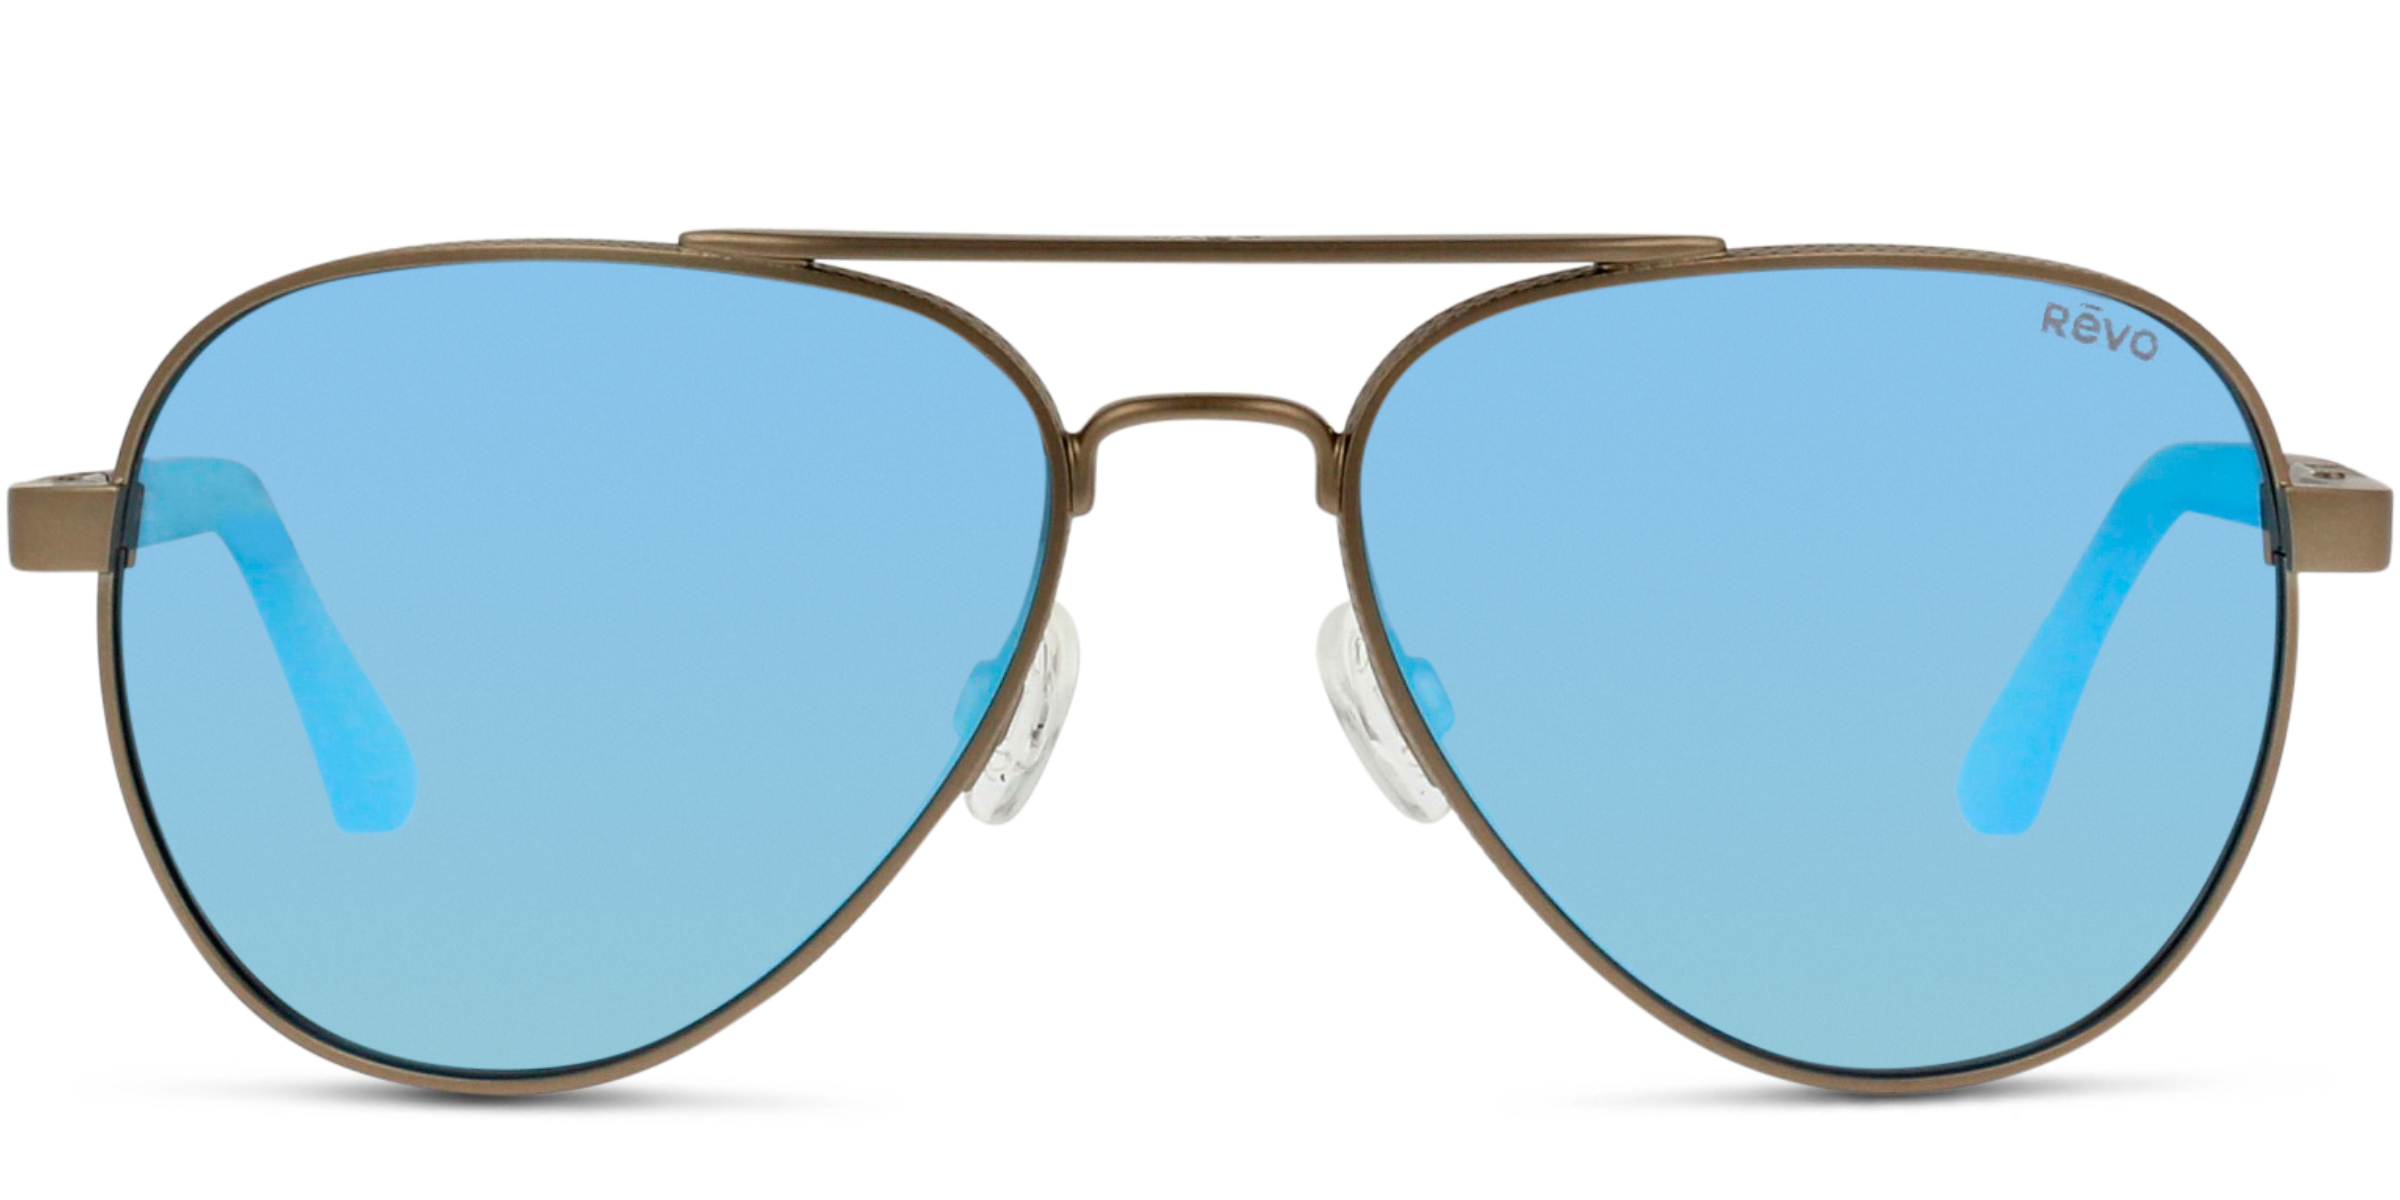 Buy Revo RE1011 sunglasses for men or women at For Eyes